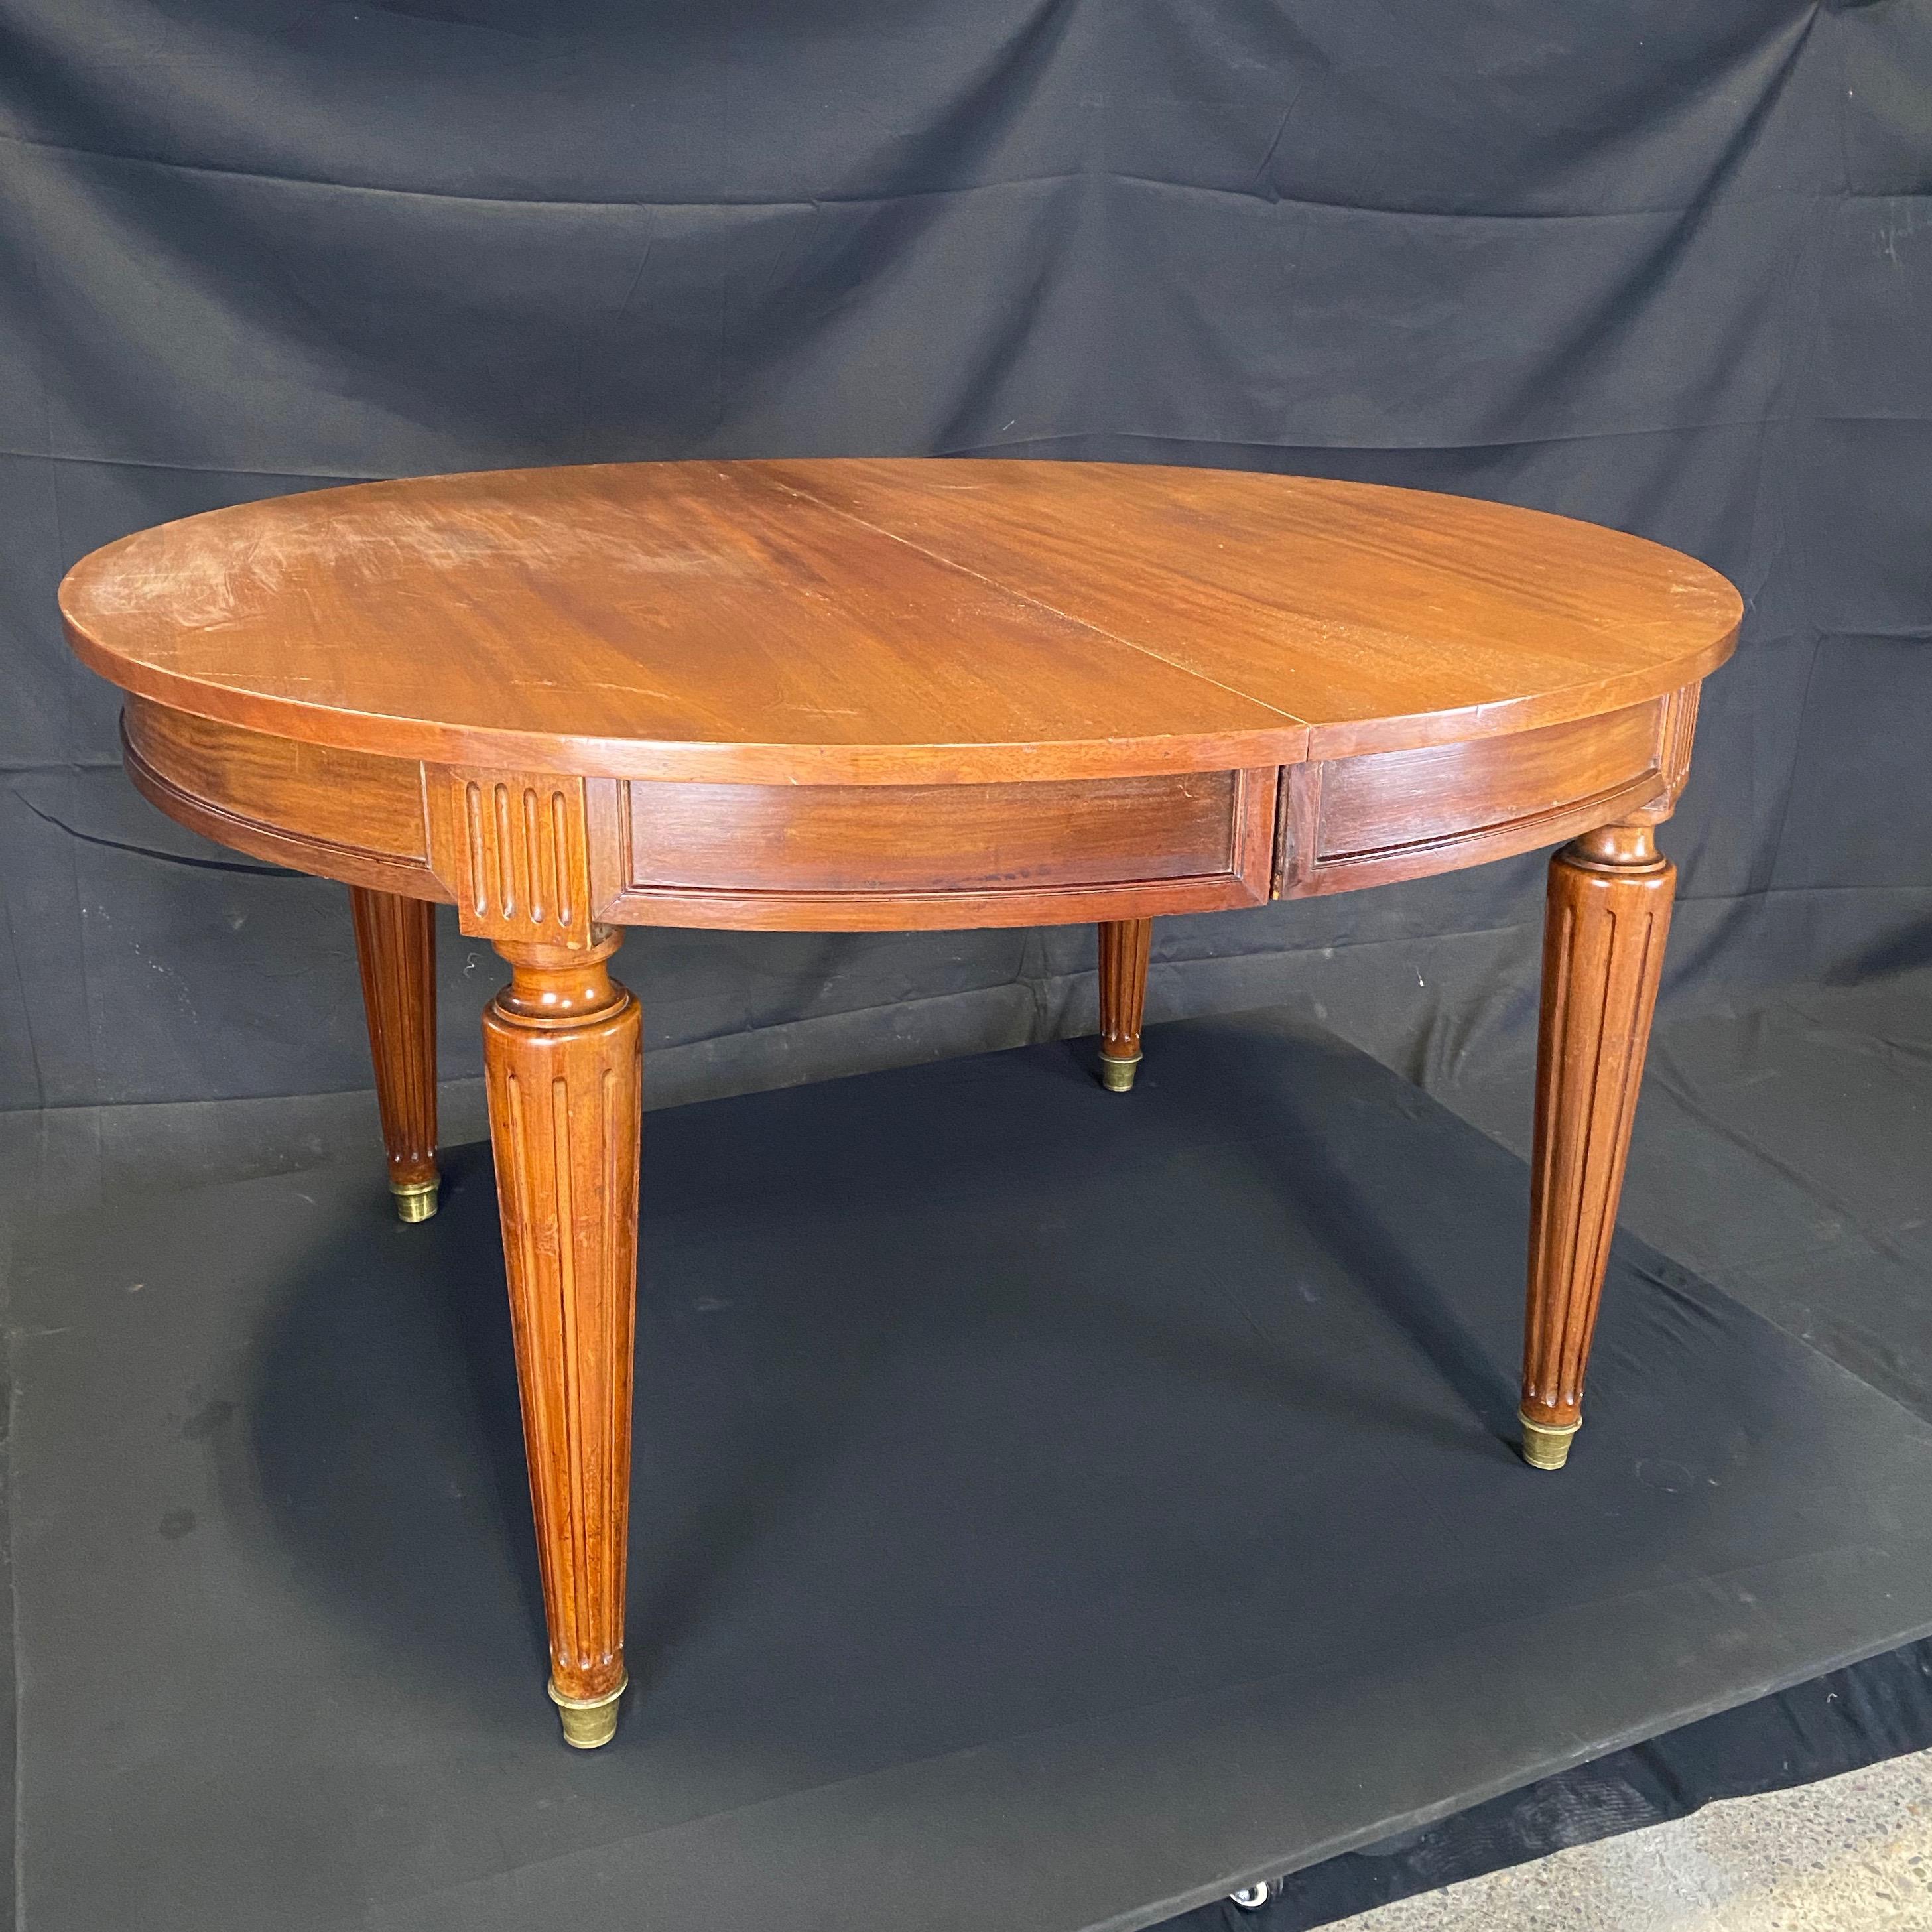 Der schöne ovale Louis XVI-Tisch aus Lyon, Frankreich, kann vielseitig verwendet werden: als Eingangs- oder Statement-Tisch, als schöner schwebender Schreibtisch, als kleiner Esstisch für 4 Personen oder als ovaler Esstisch für bis zu acht Personen.